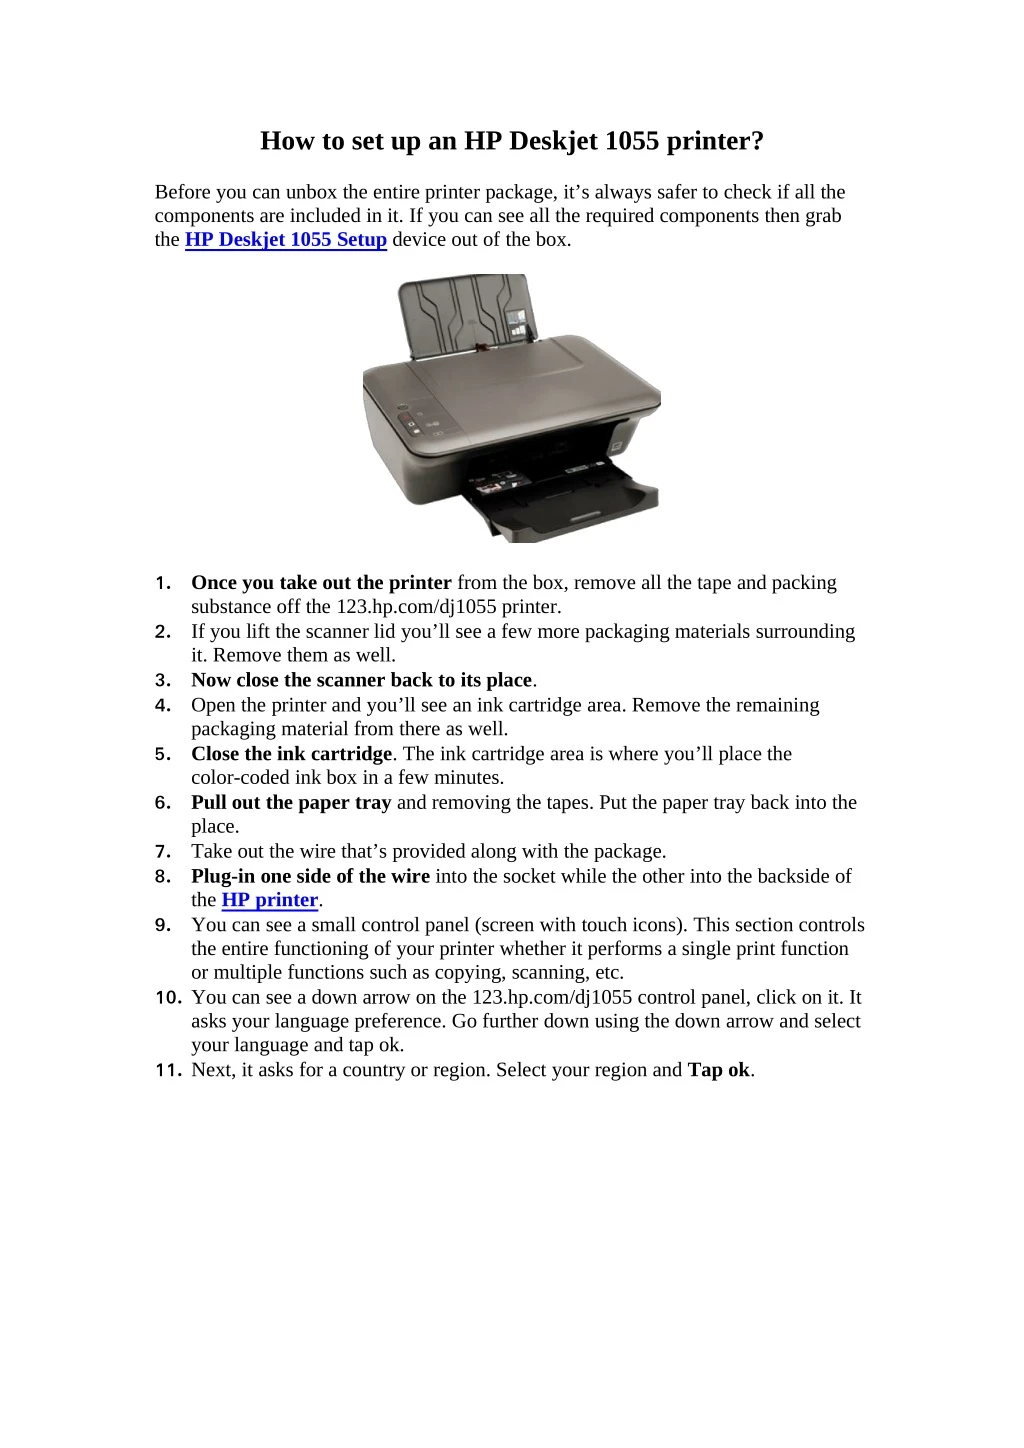 how to set up an hp deskjet 1055 printer